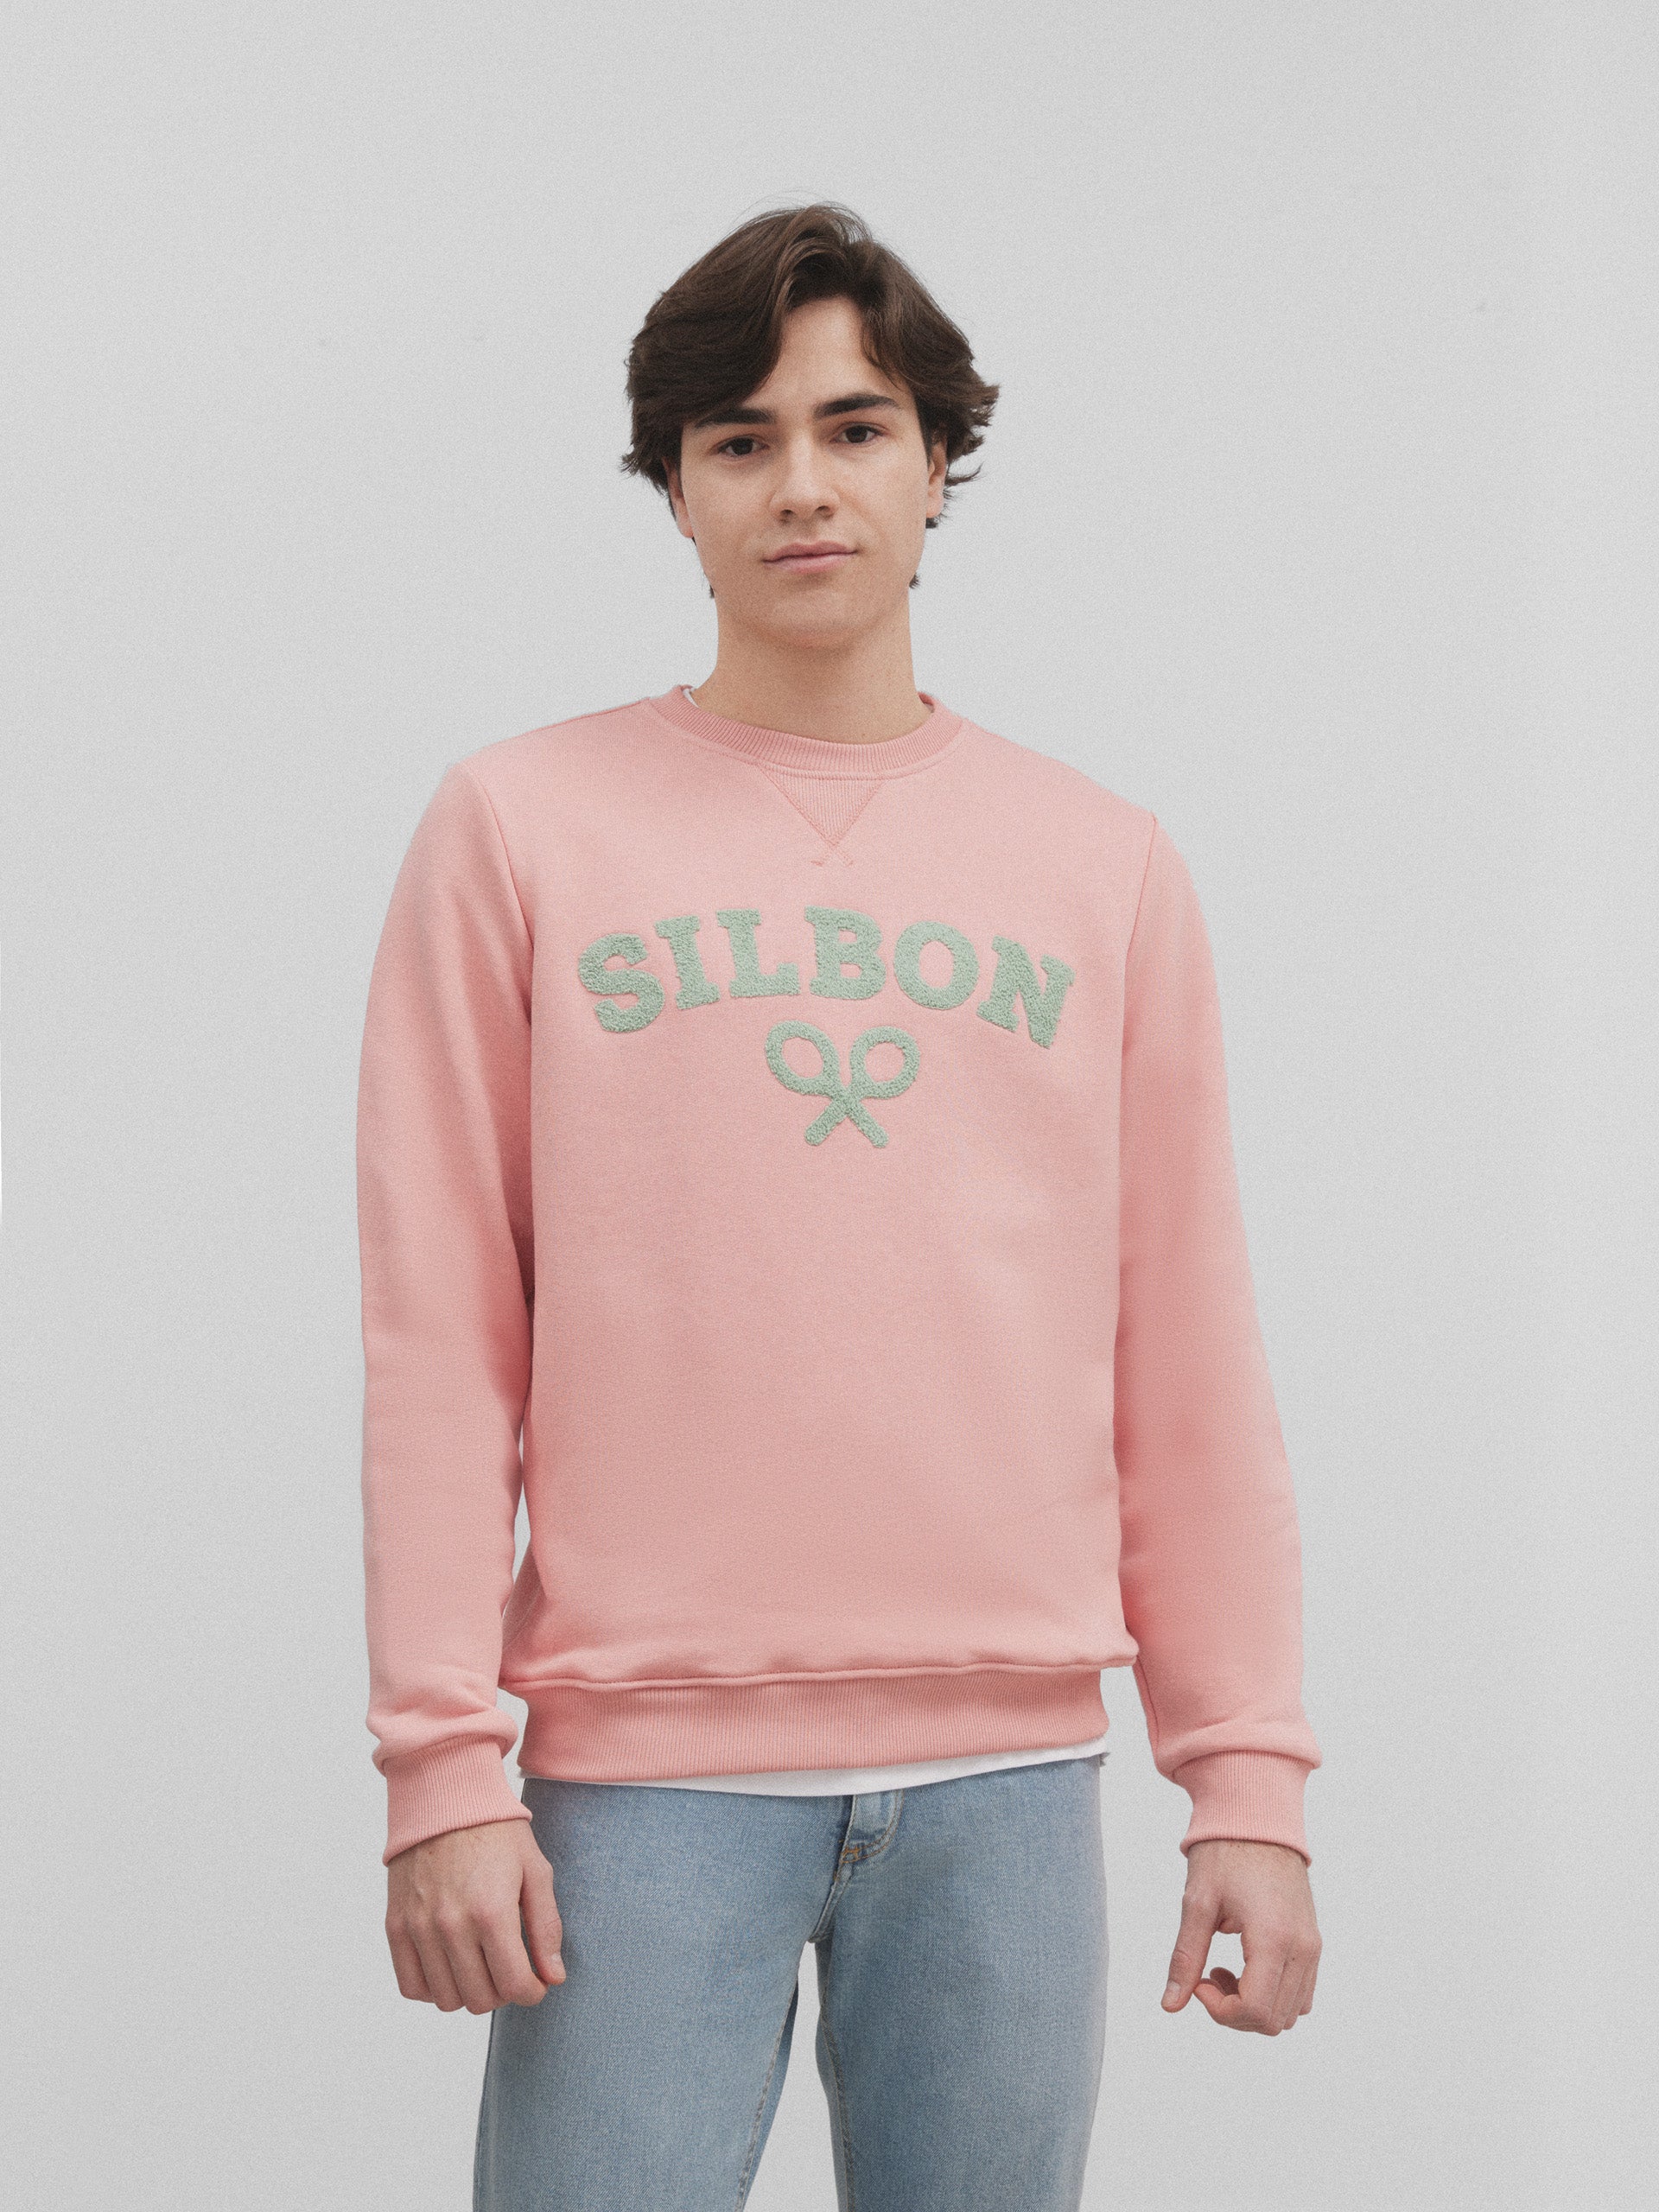 Silbon racket half coral sweatshirt